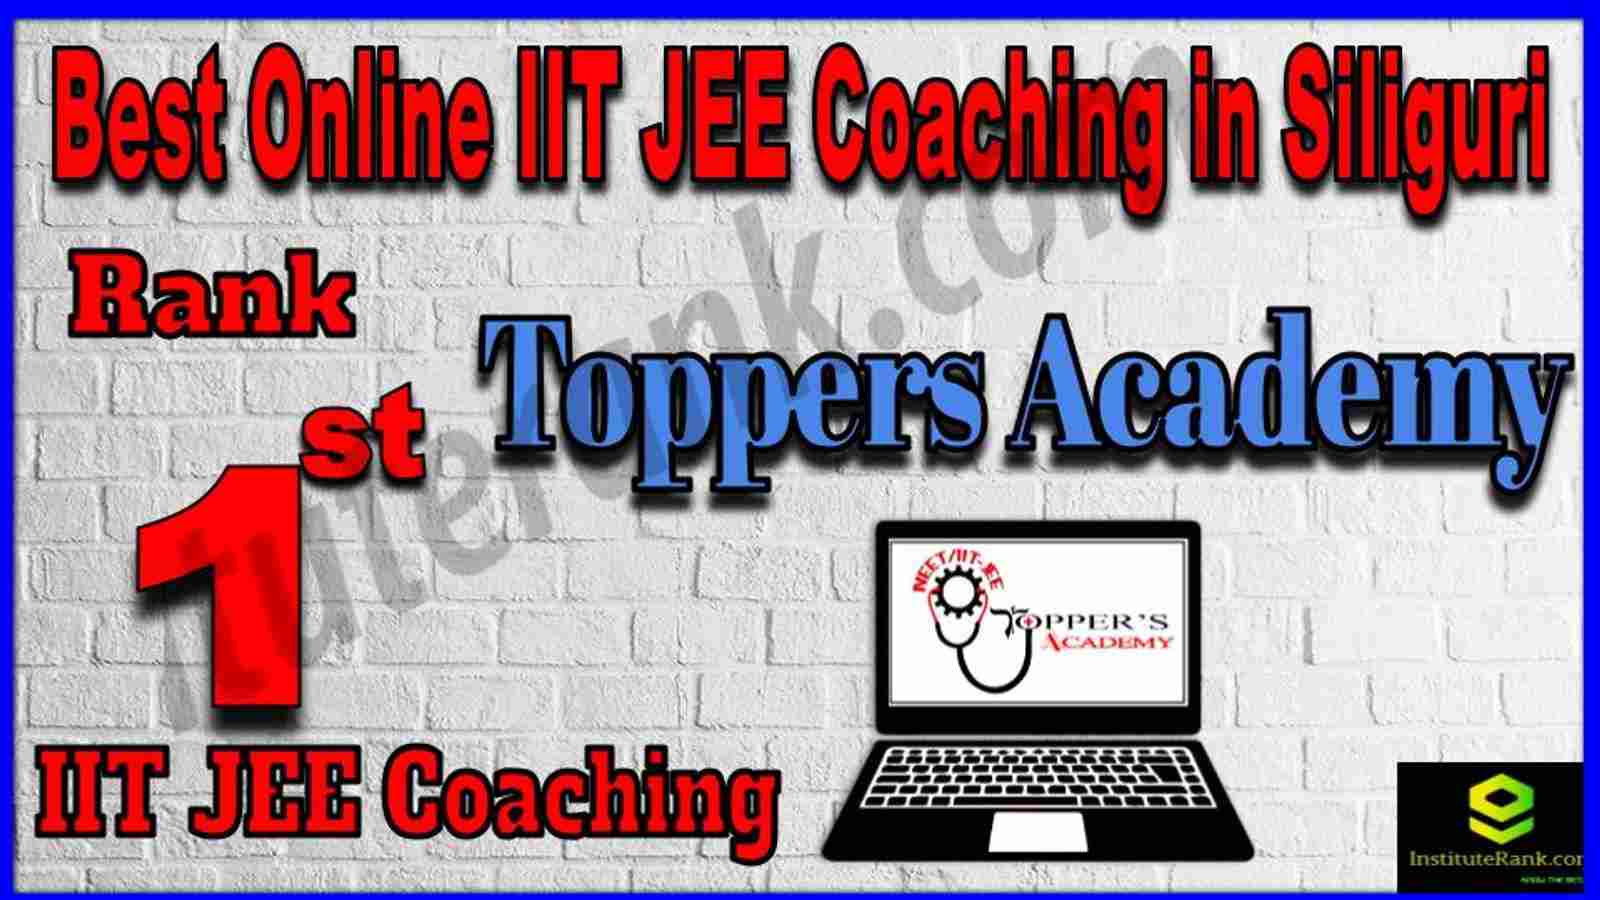 Rank 1st Best Online IIT-JEE Coaching in Siliguri